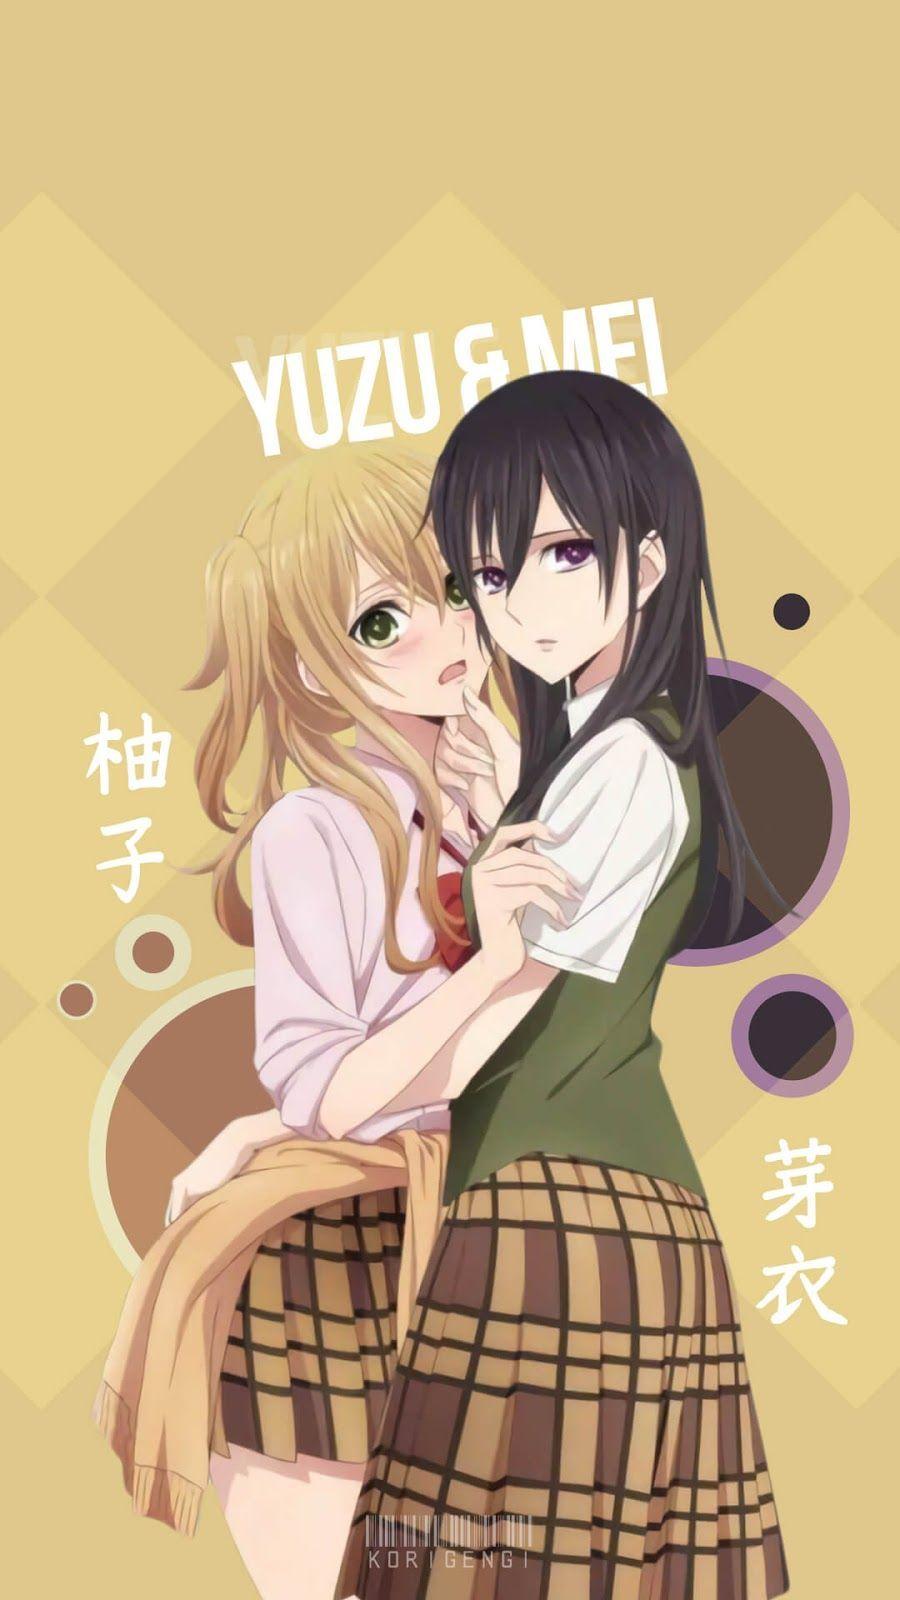 Yuzu & Mei Anime Wallpaper. Gadis animasi, Animasi, dan